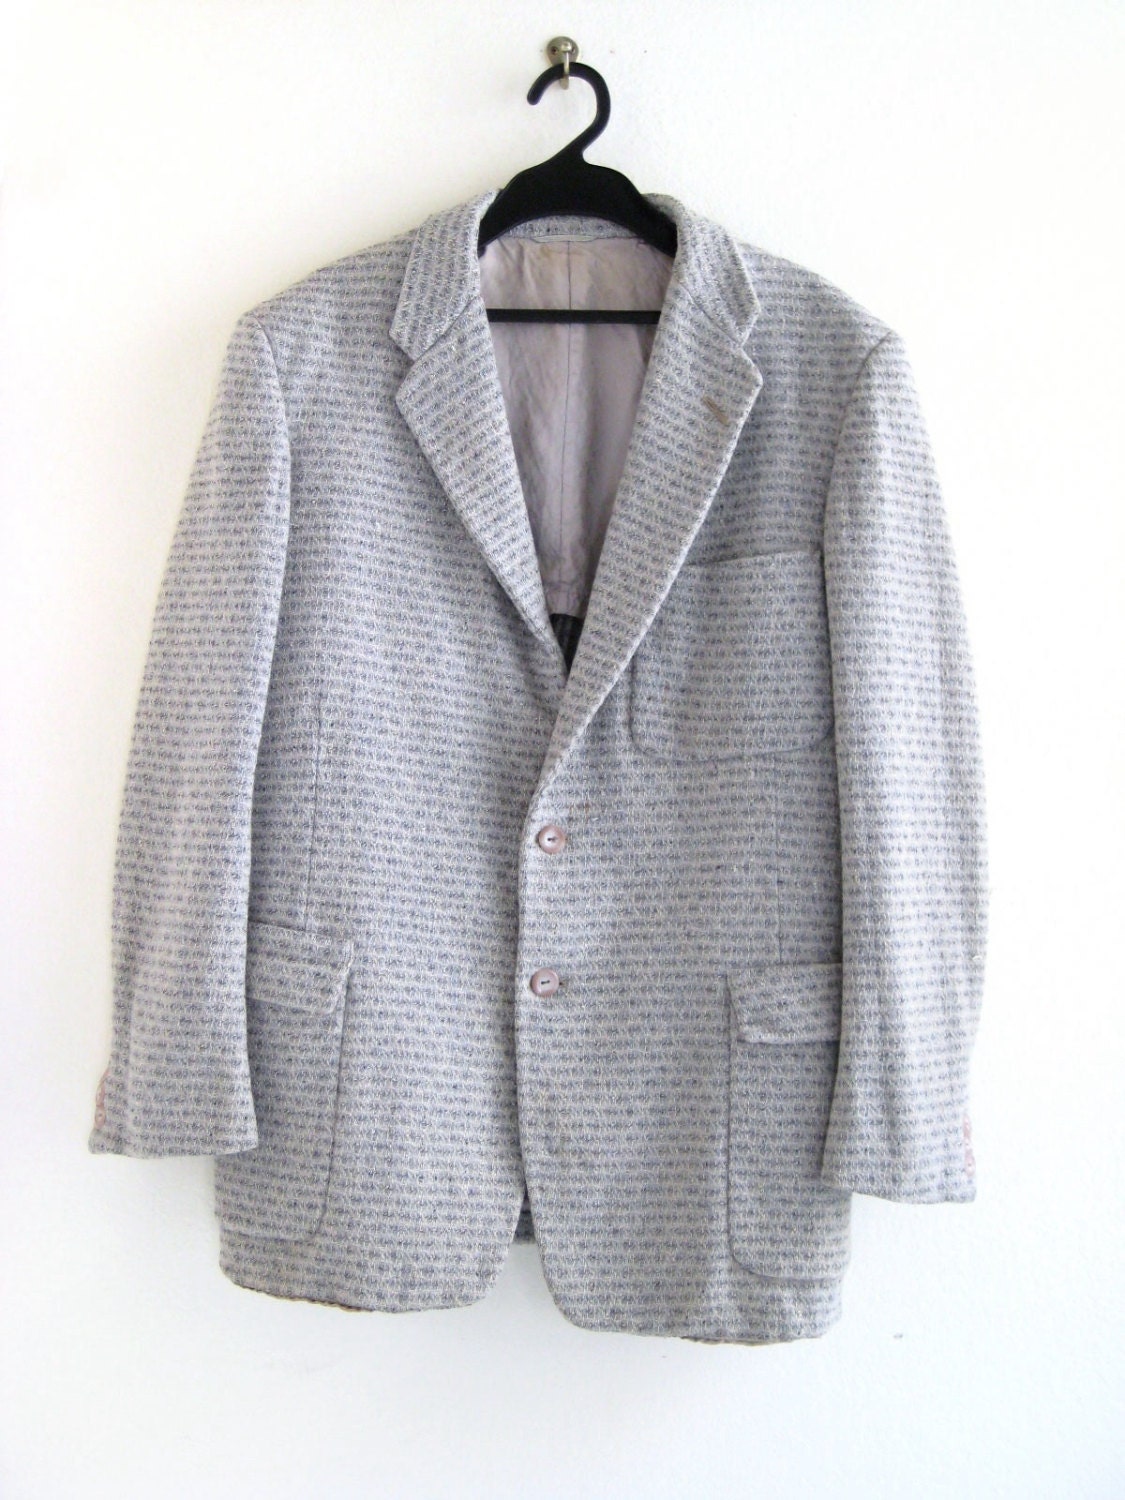 1950's Tweed jacket / sport coat / blazer